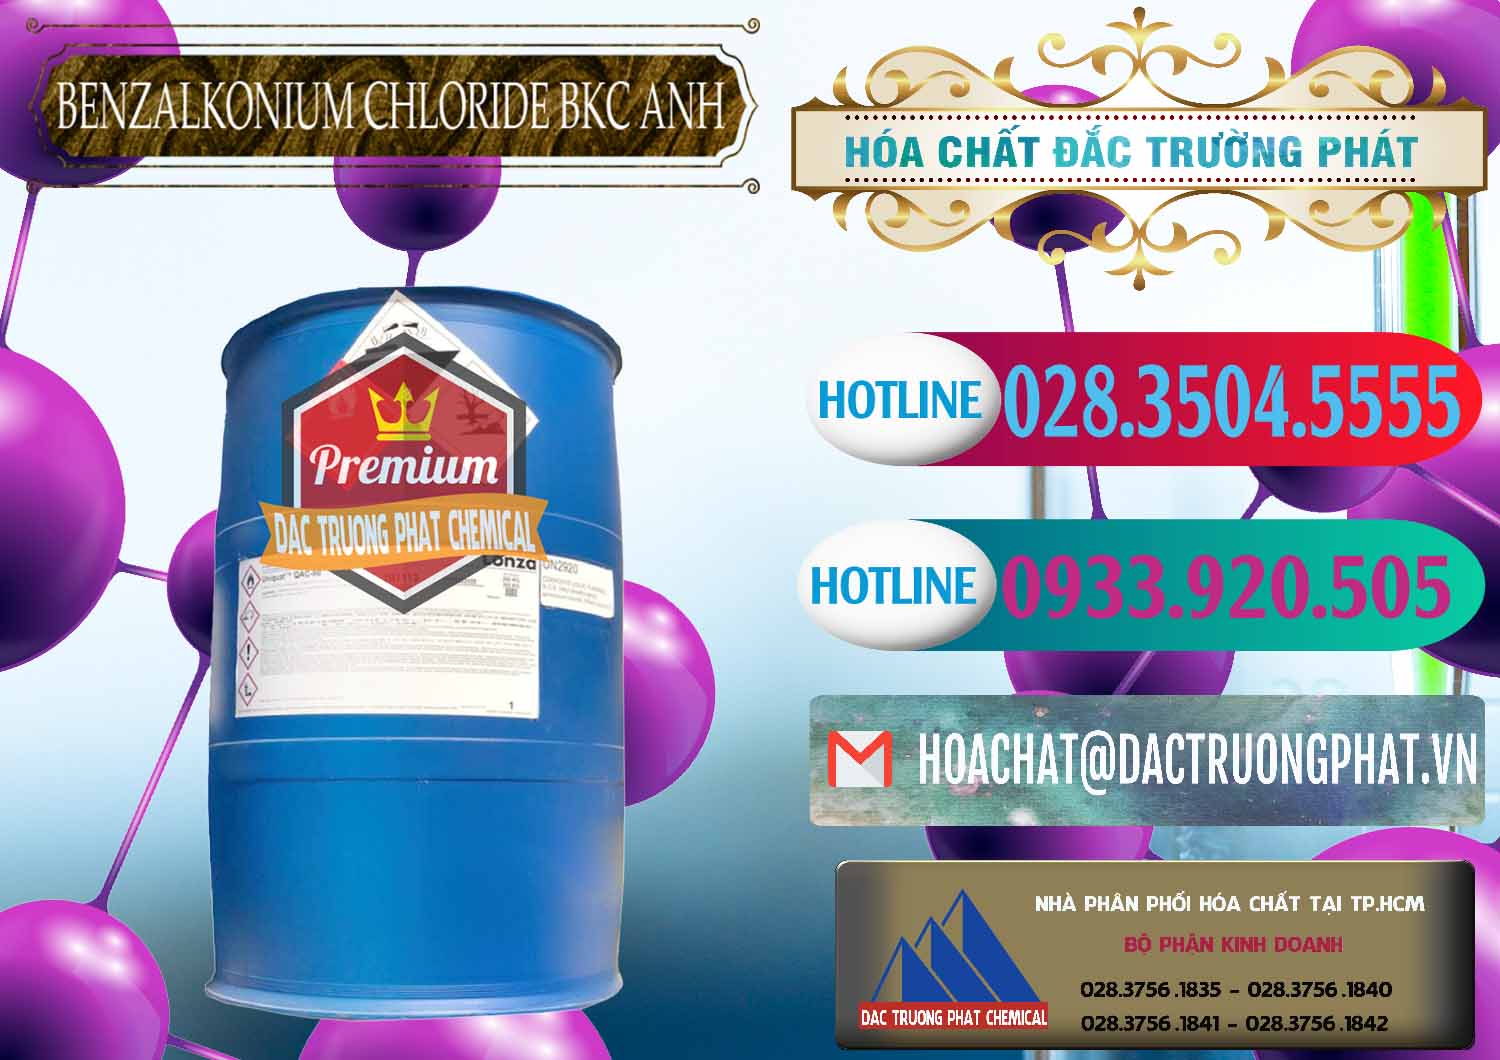 Đơn vị kinh doanh ( bán ) BKC - Benzalkonium Chloride 80% Anh Quốc Uk Kingdoms - 0457 - Nhà phân phối - kinh doanh hóa chất tại TP.HCM - truongphat.vn